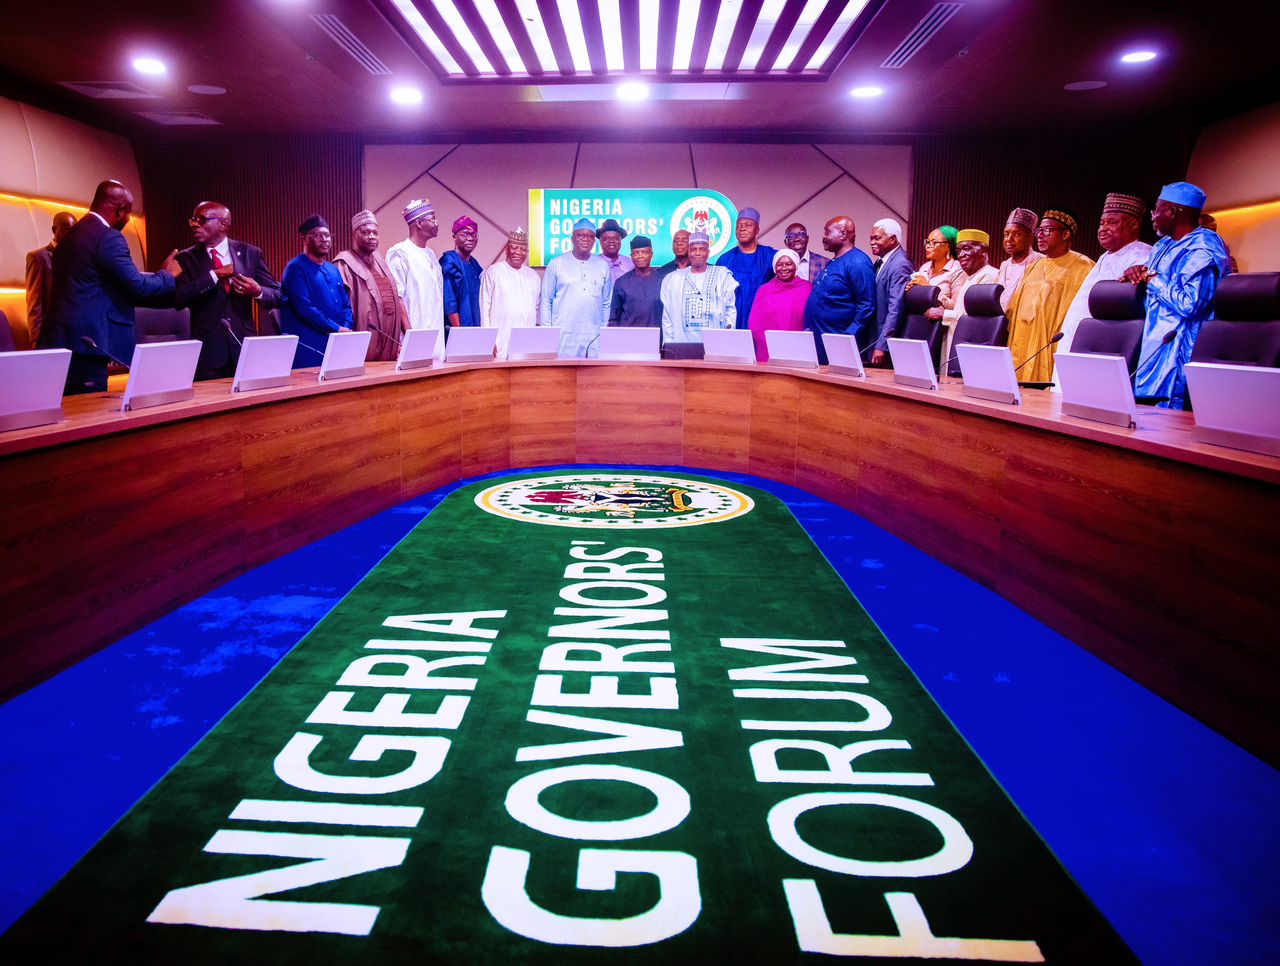 Commissioning Of Nigeria Governors’ Forum Secretariat Complex In Maitama, Abuja On 29/09/2022